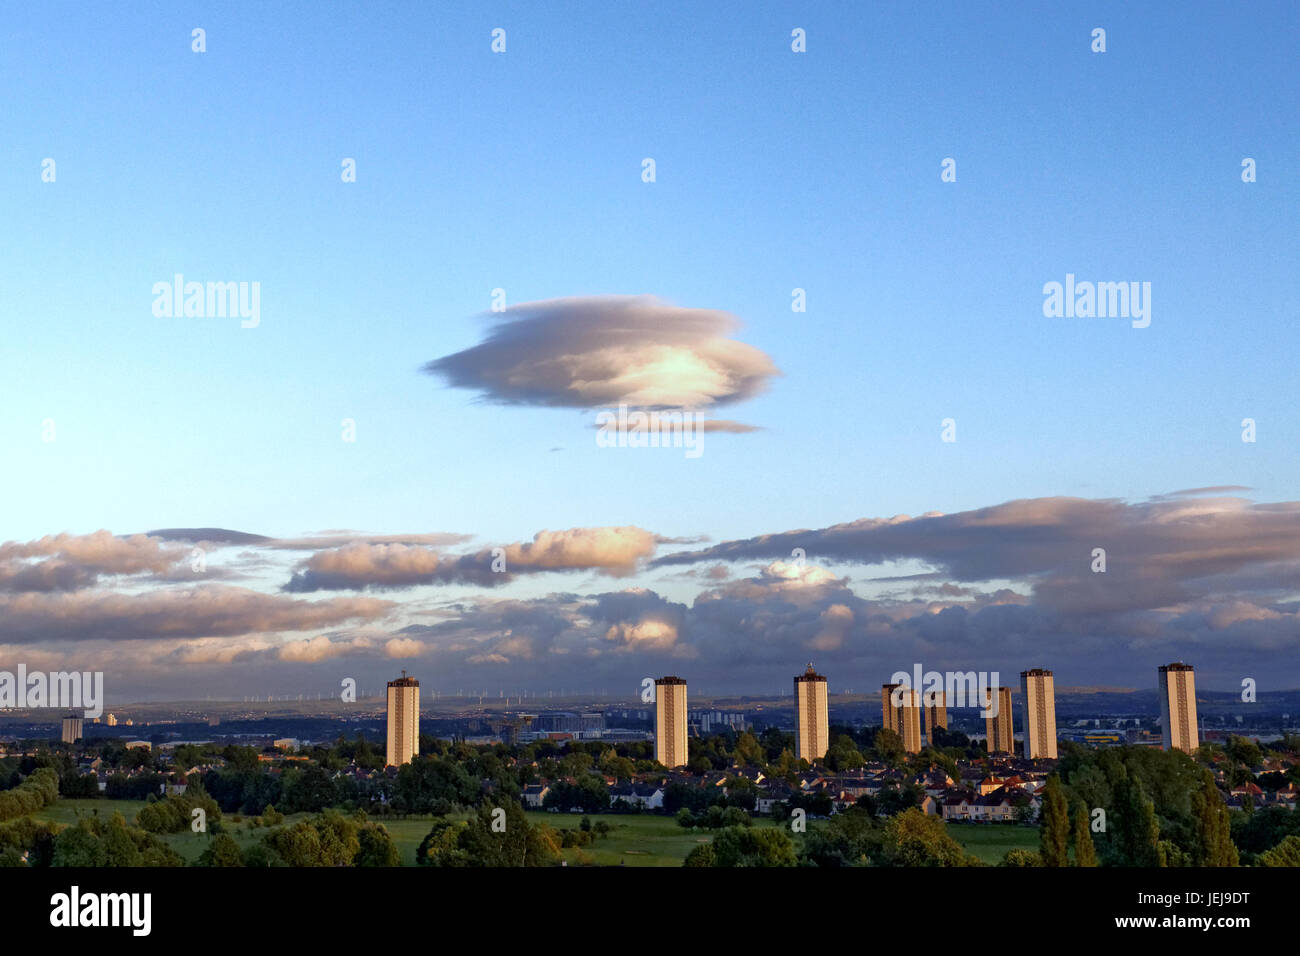 Glasgow, Écosse, Royaume-Uni, 25 juin OVNI étrange forme mothership énorme au-dessus de la ville, nuages lenticulaires Altocumulus lenticularis sont en forme de lentilles fixes les nuages qui se forment dans la troposphère Crédit : Gérard Ferry/Alamy Live News Banque D'Images